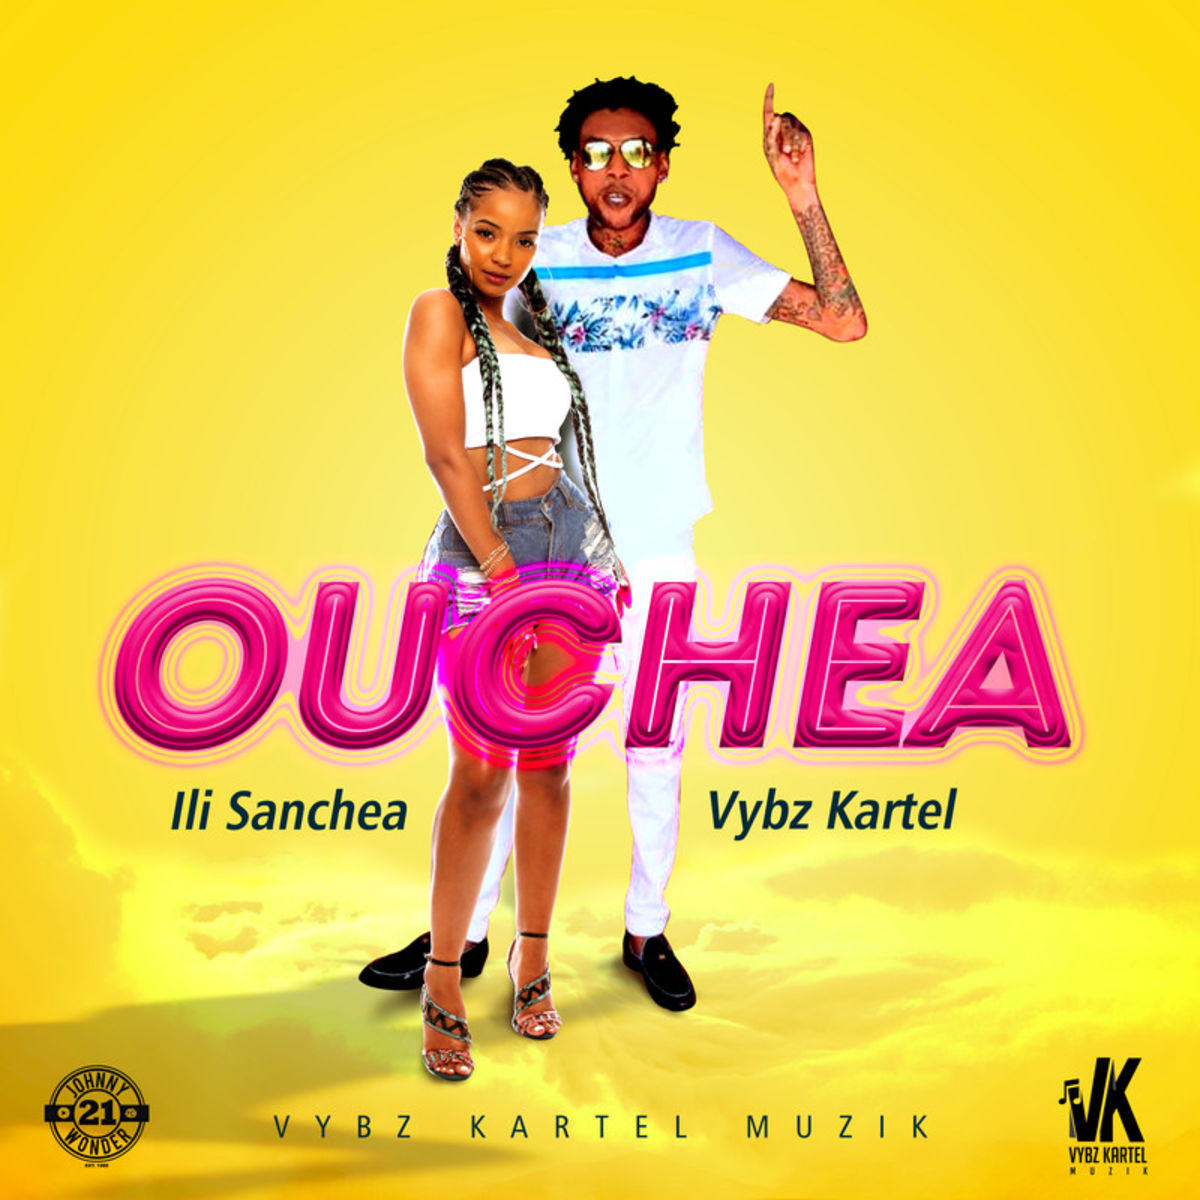 Ili Sanchea Feat. Vybz Kartel - Ouchea.mp3